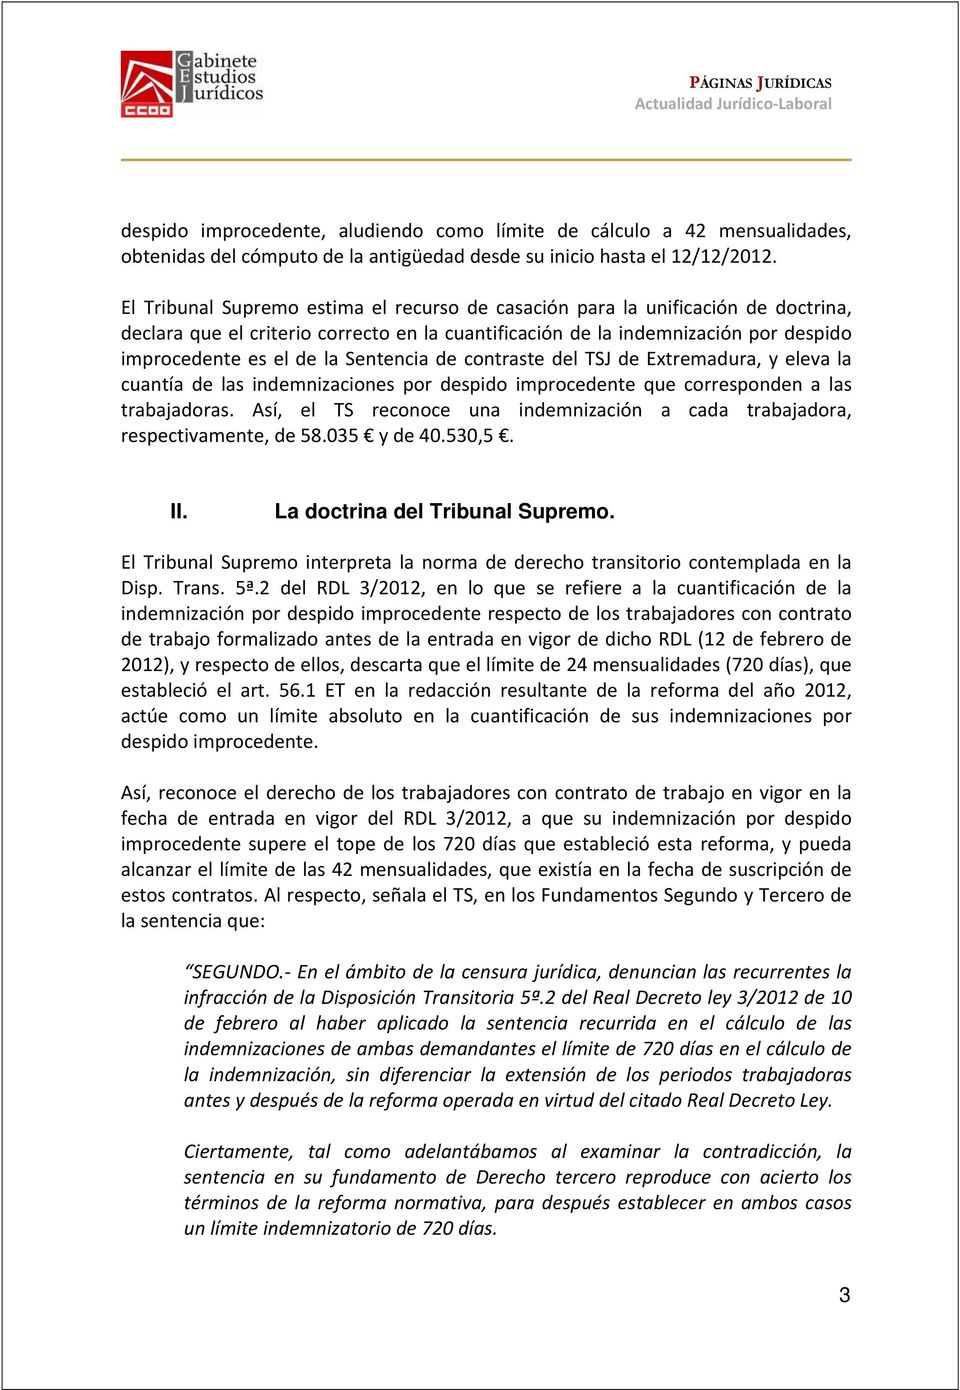 Sentencia de contraste del TSJ de Extremadura, y eleva la cuantía de las indemnizaciones por despido improcedente que corresponden a las trabajadoras.